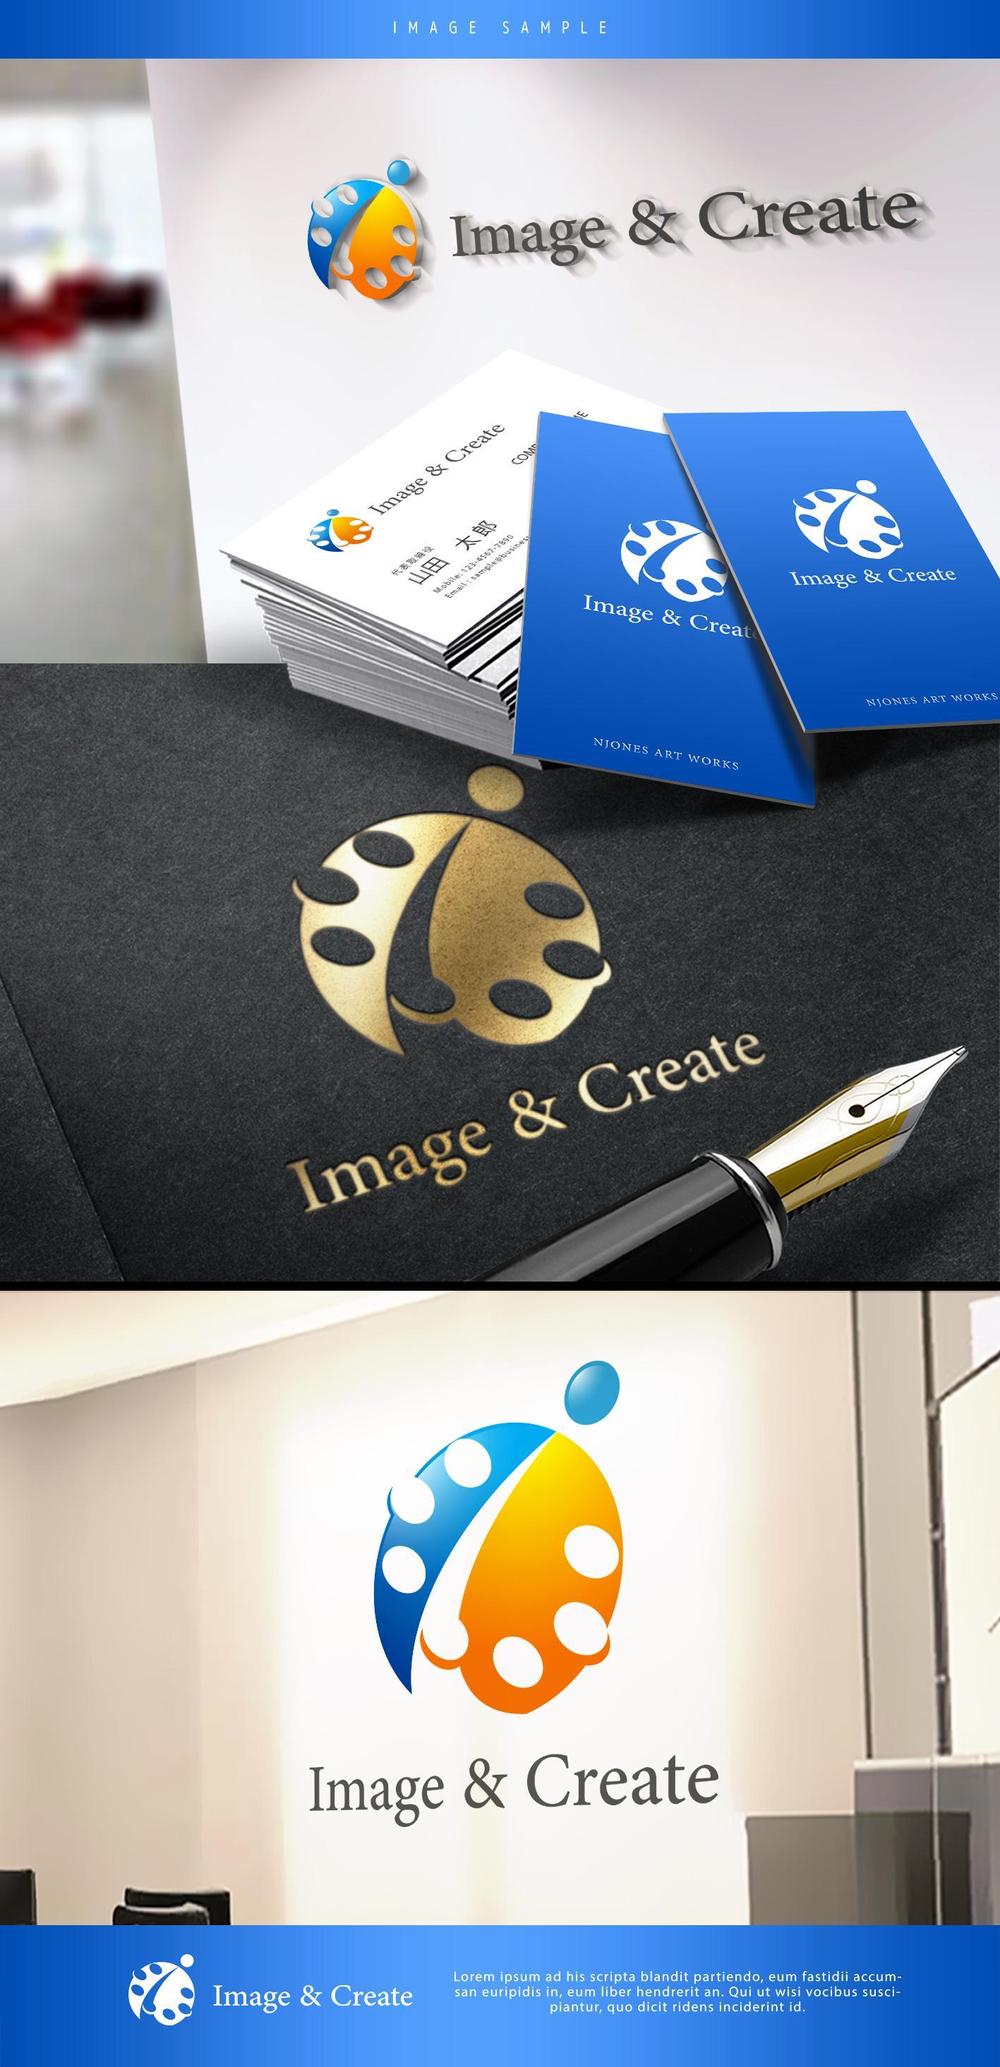 Image-&-Create3.jpg